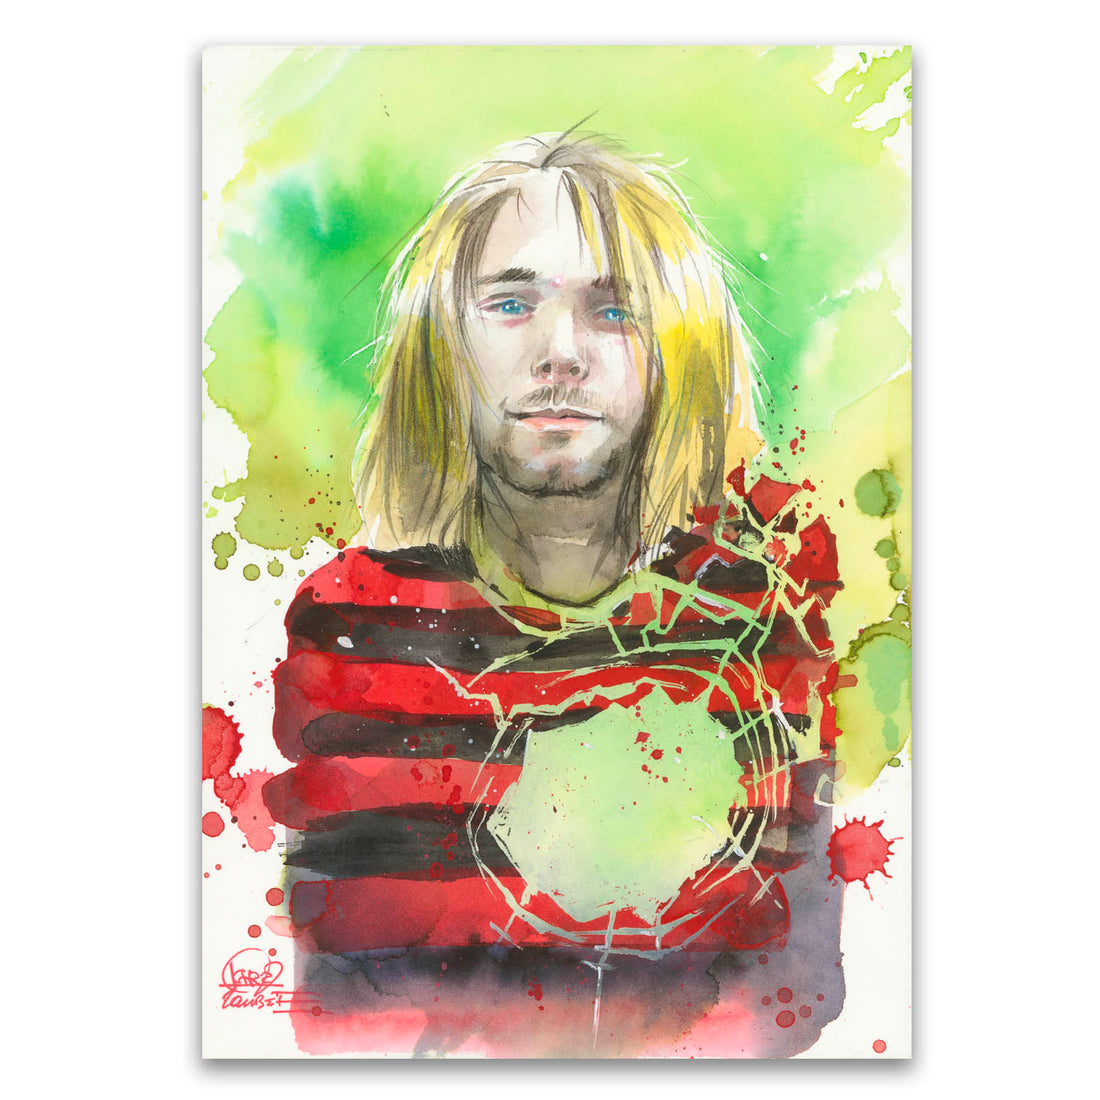 Shattered People (Kurt)